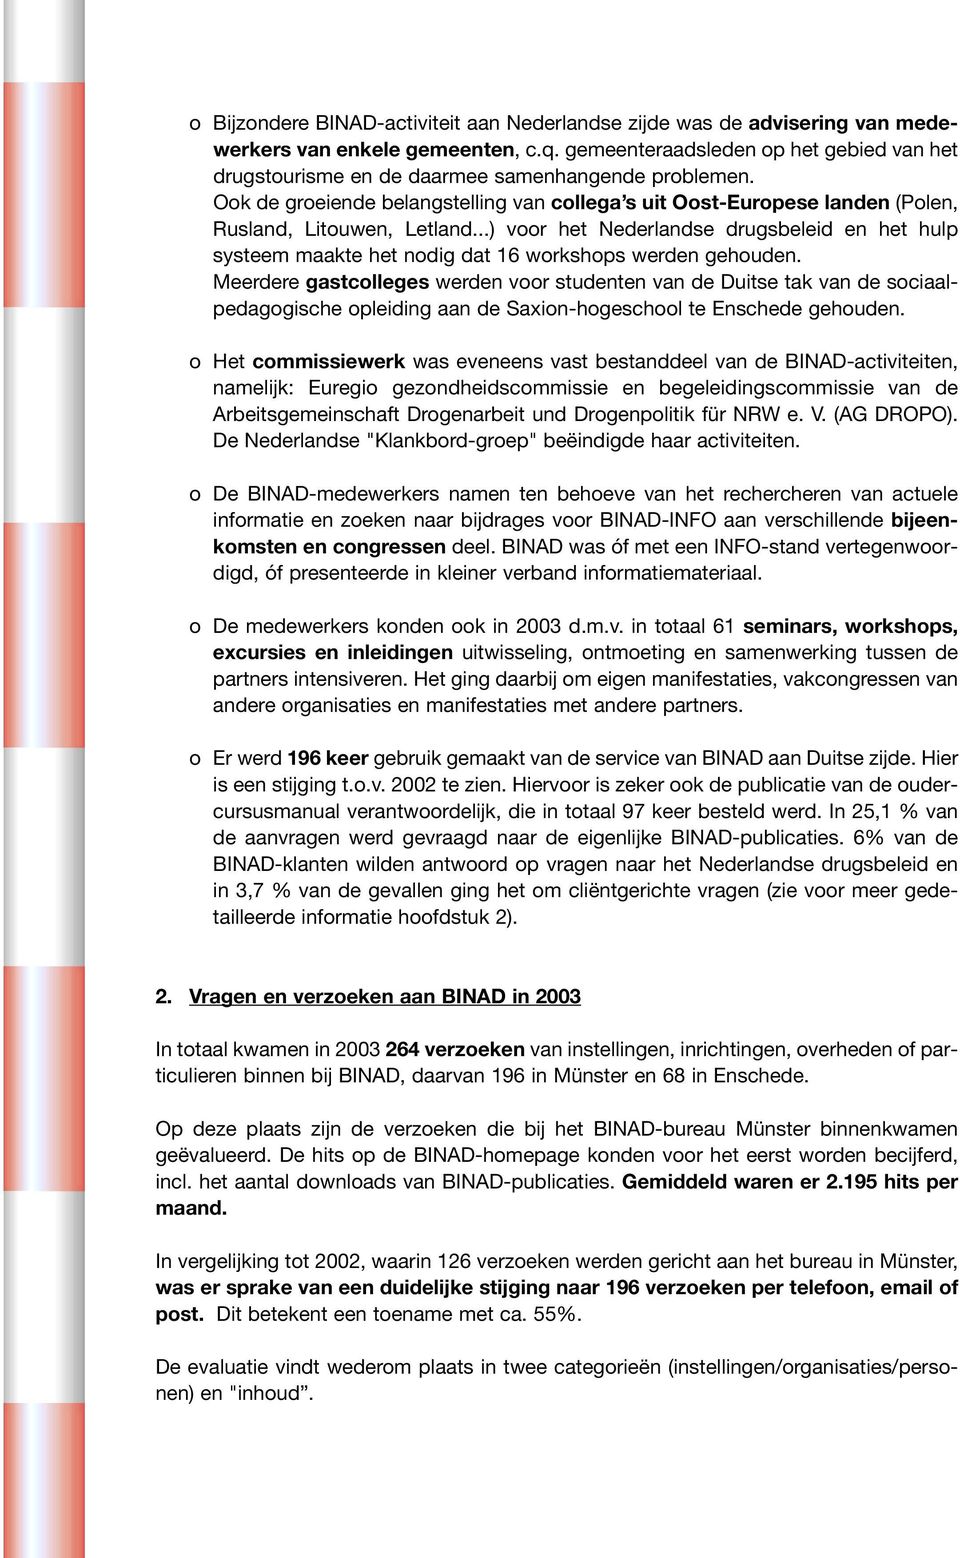 ..) voor het Nederlandse drugsbeleid en het hulp systeem maakte het nodig dat 16 workshops werden gehouden.